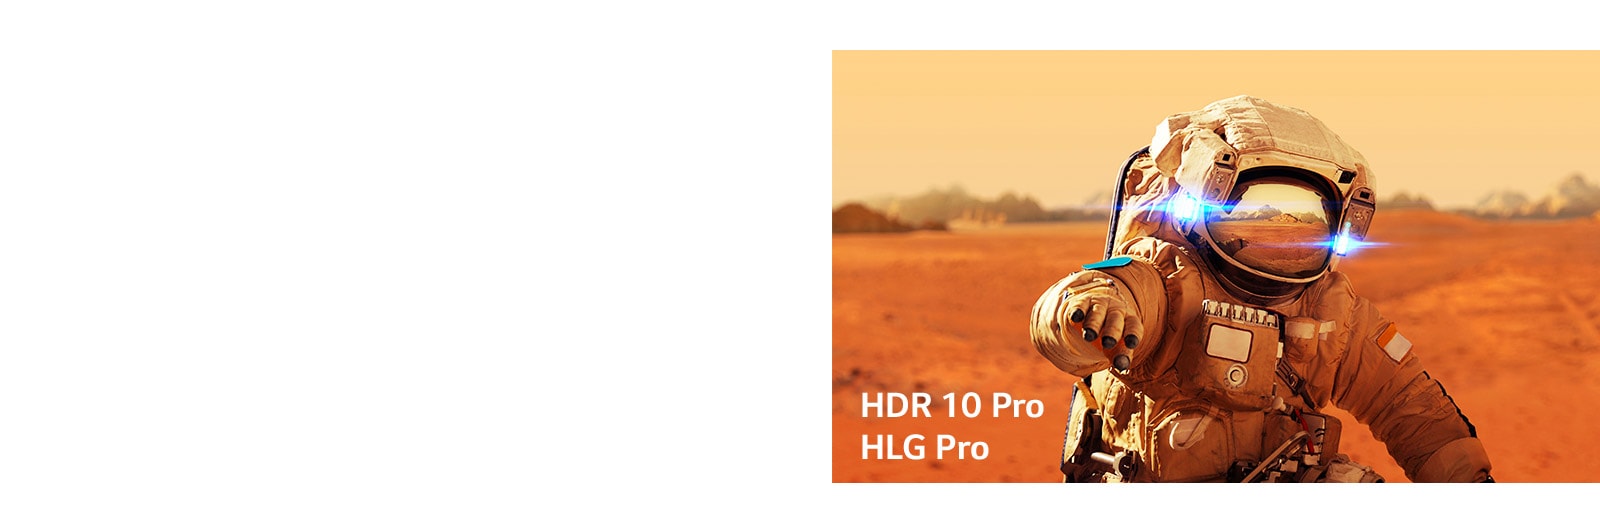 Marvel Ironman, carte del titolo con loghi HLG Pro e HDR 10 Pro